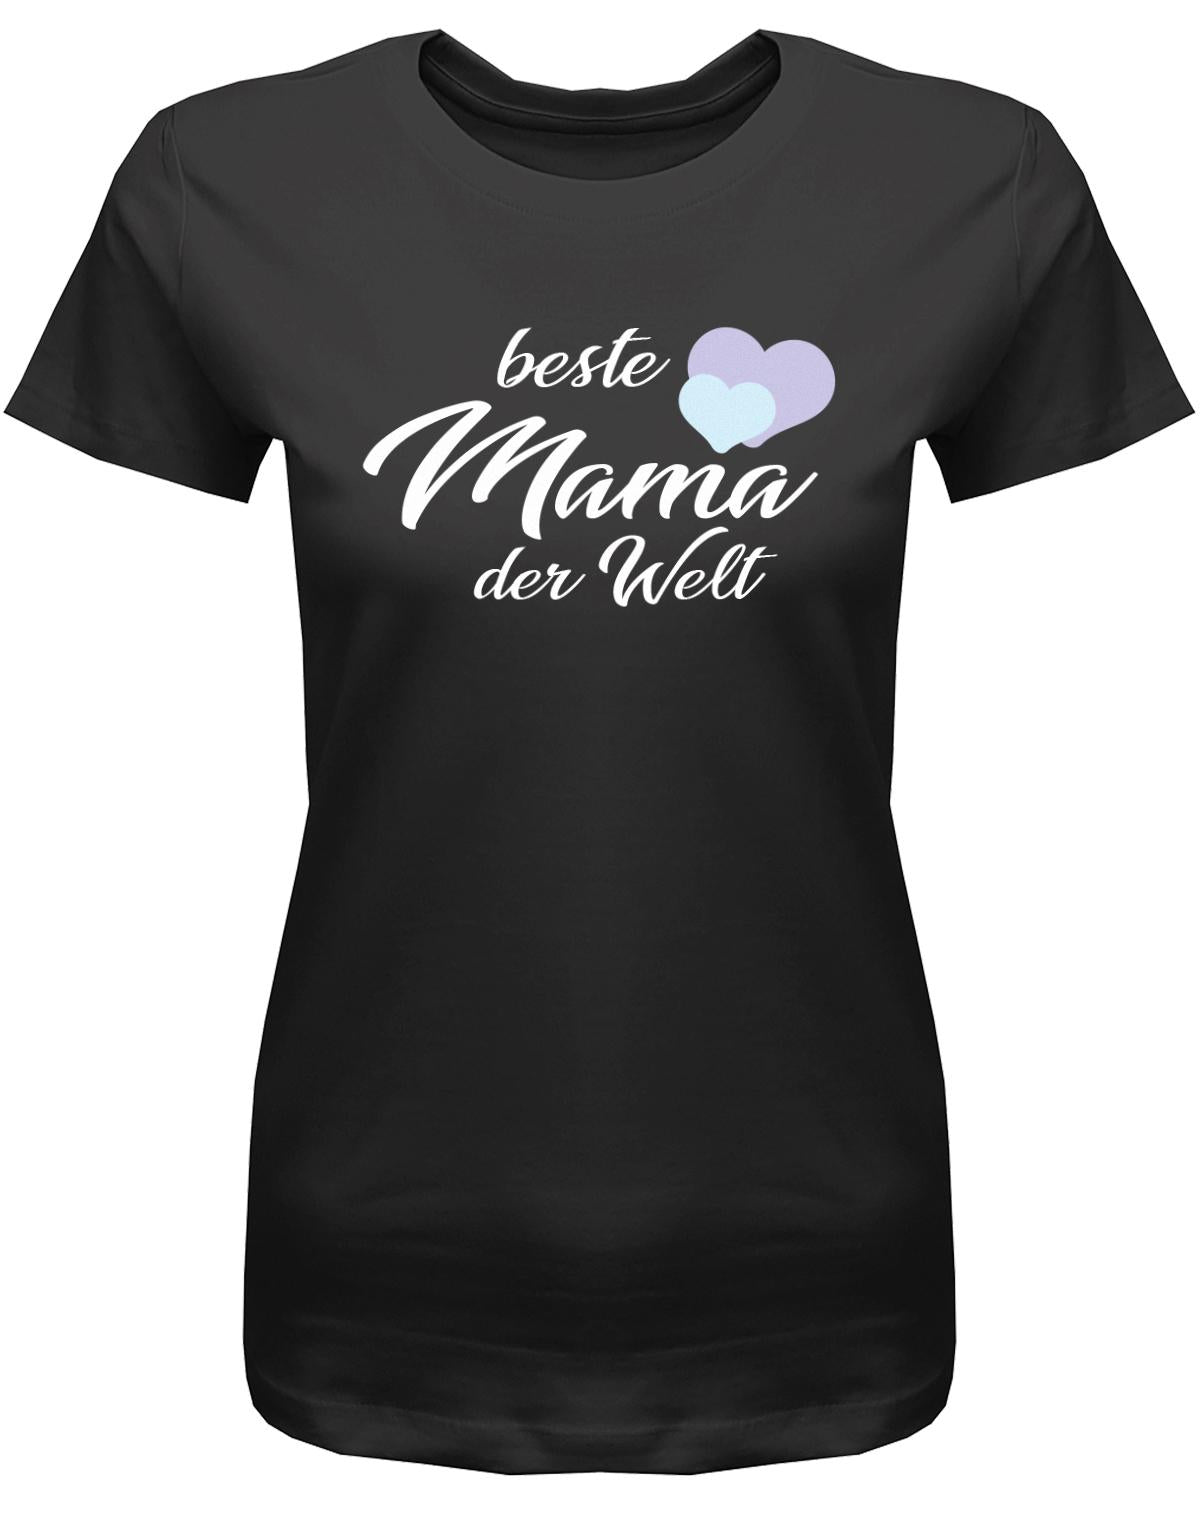 Beste-Mama-der-Welt-2-Herzchen-Damen-Shirt-SchwarzQbaKe0IKcMzz6